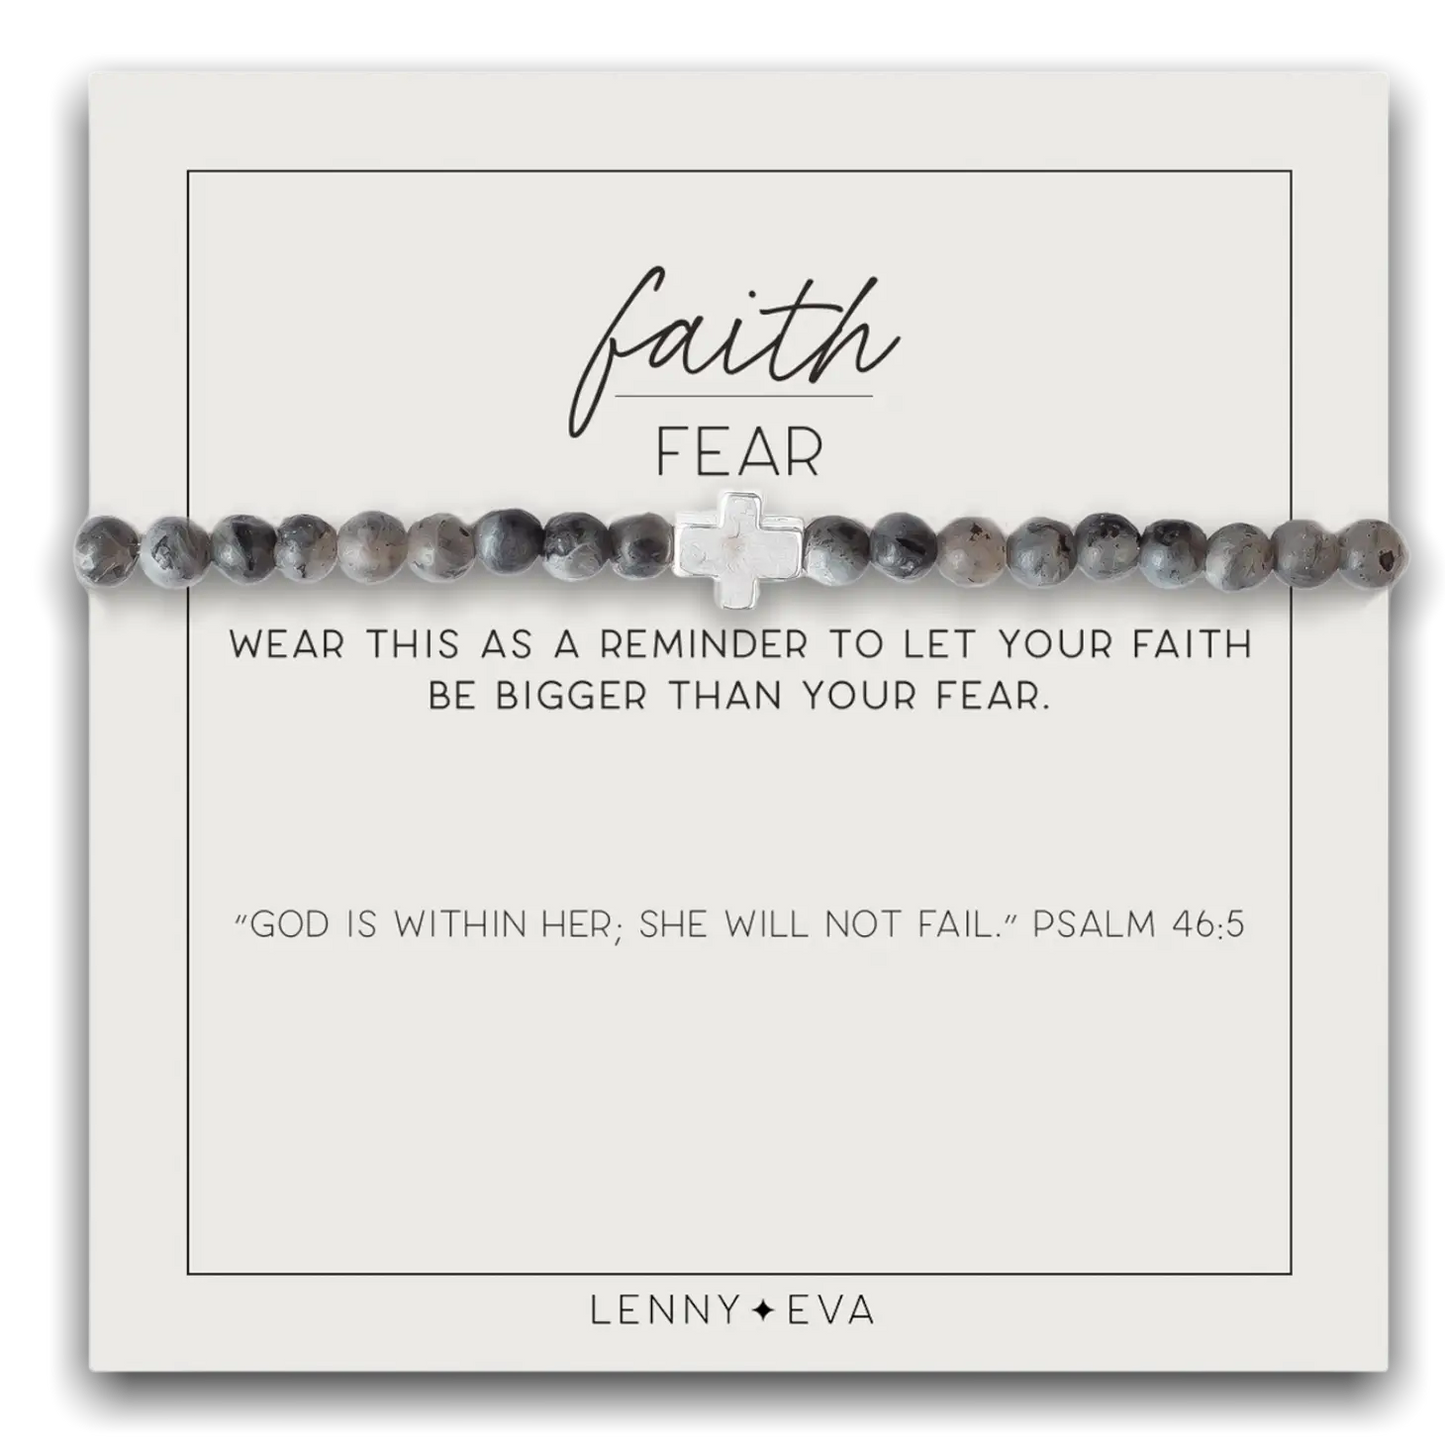 Faith over Fear Gemstone Bracelet